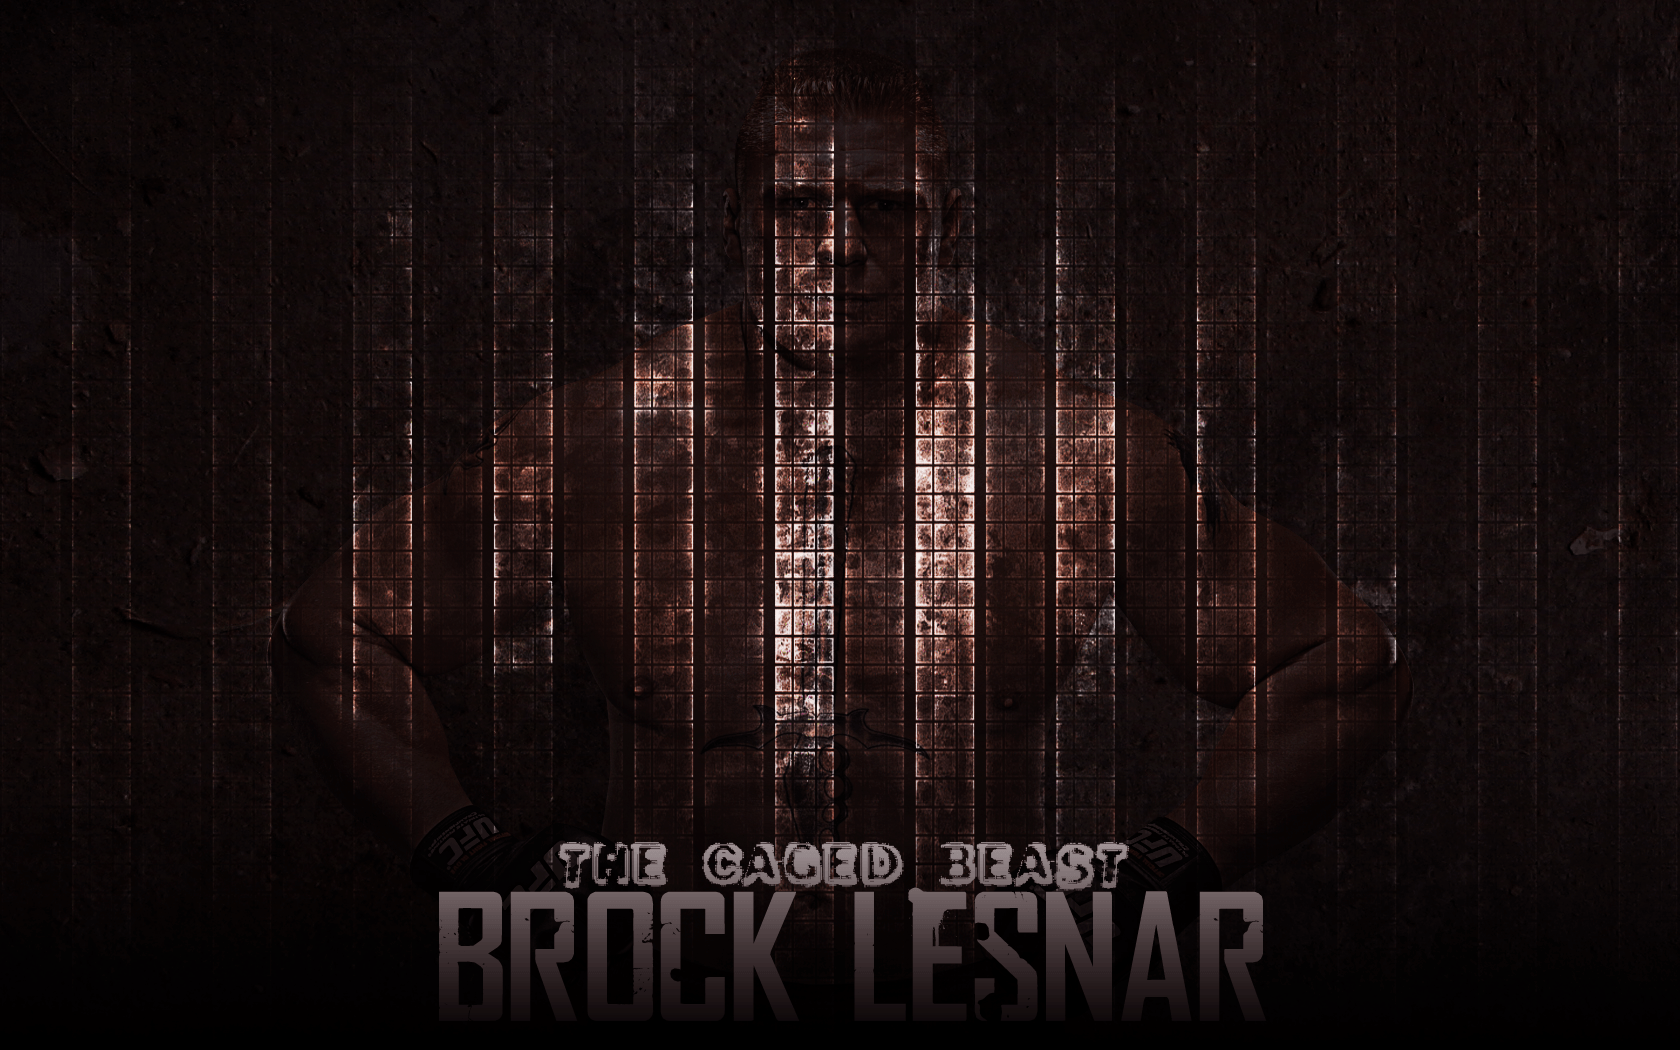 Brock Lesnar wallpaper